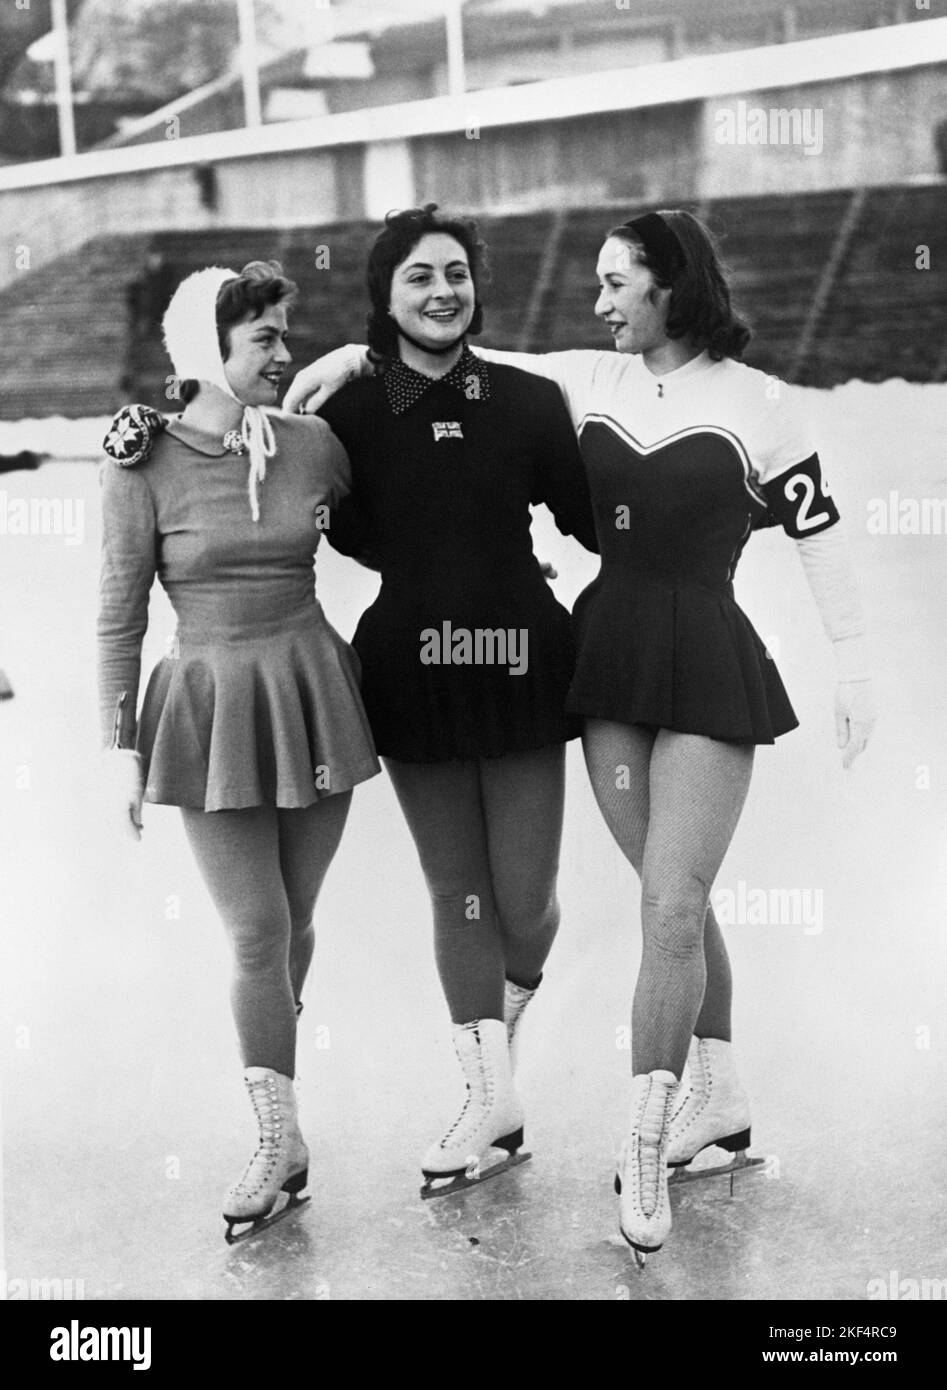 Eiskunstläufer beim Winter 1952 (l-r) Erika Kraft aus Deutschland, Jeannette Altwegg aus Großbritannien und Jaqueline du Bief aus Frankreich. Jeannette Altwegg gewann die Goldmedaille bei den Damen-Singles. Stockfoto